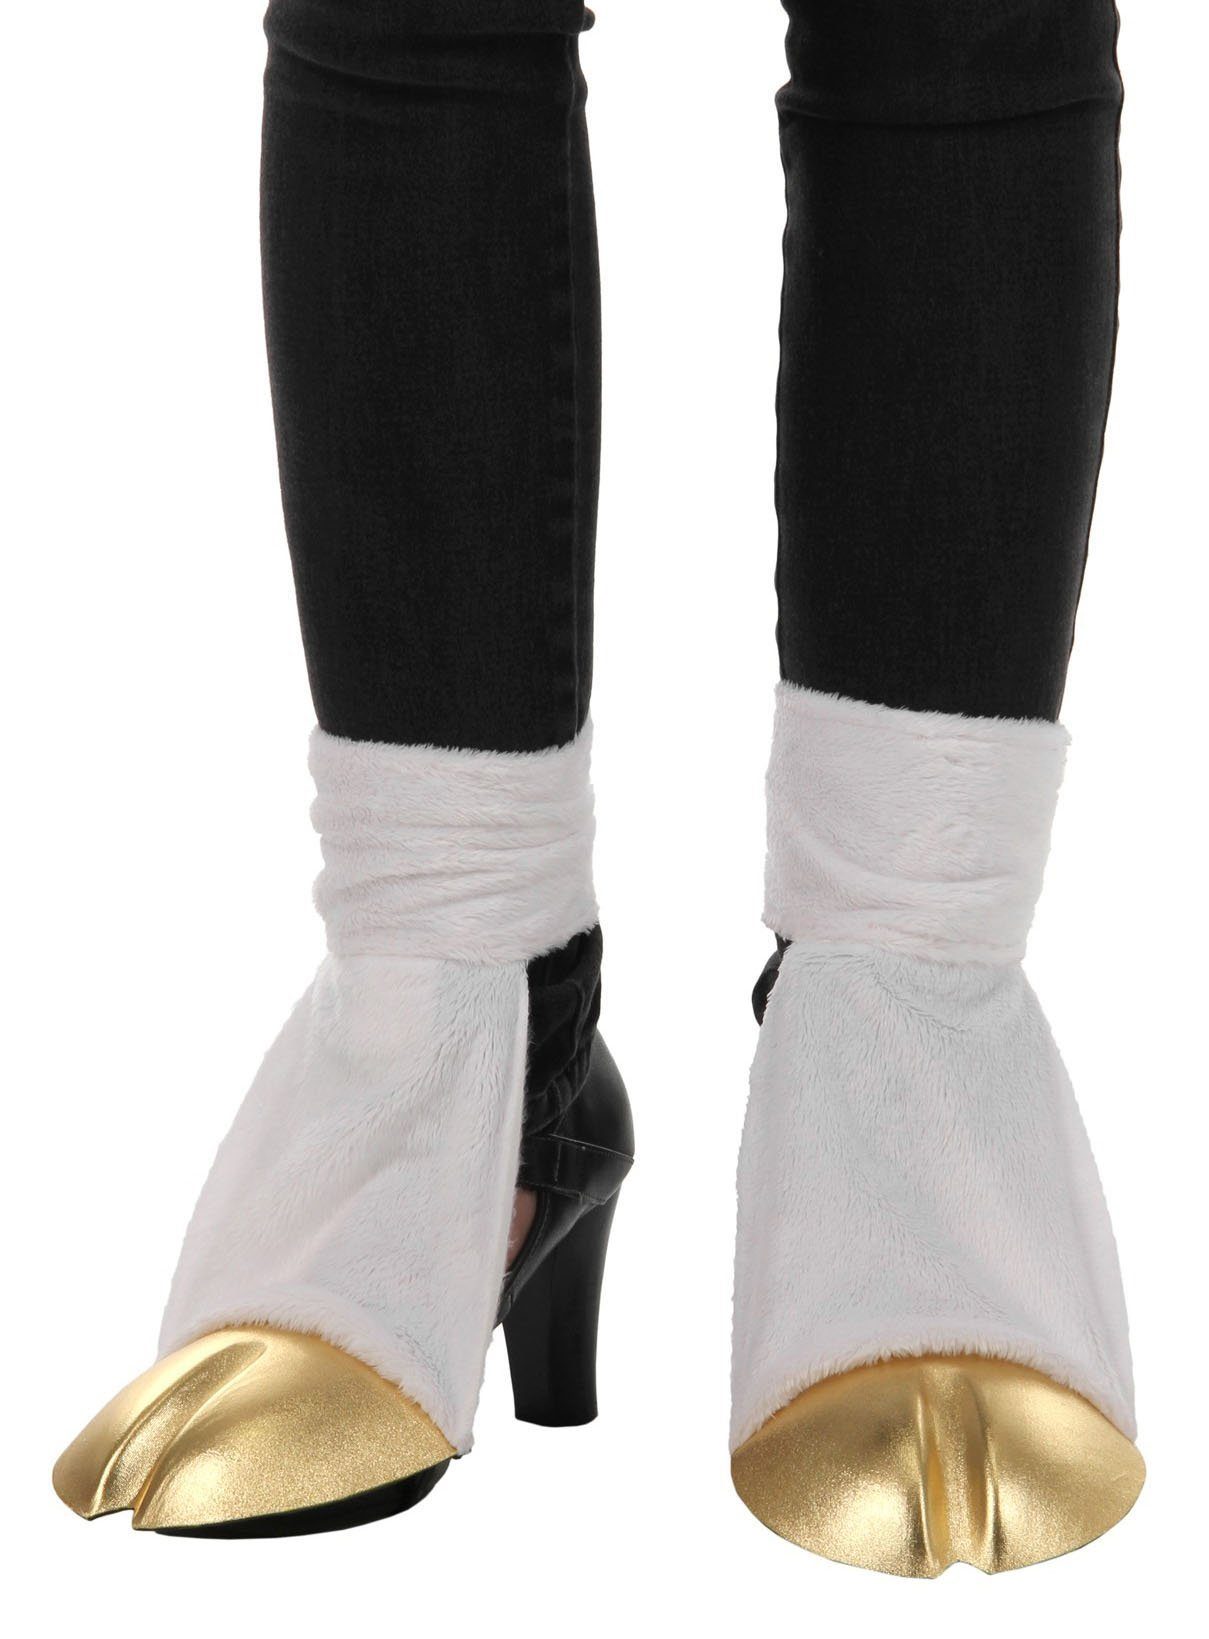 Elope Kostüm Einhorn Schuhstulpen, Goldige Gamaschen für fabelhafte Wesen